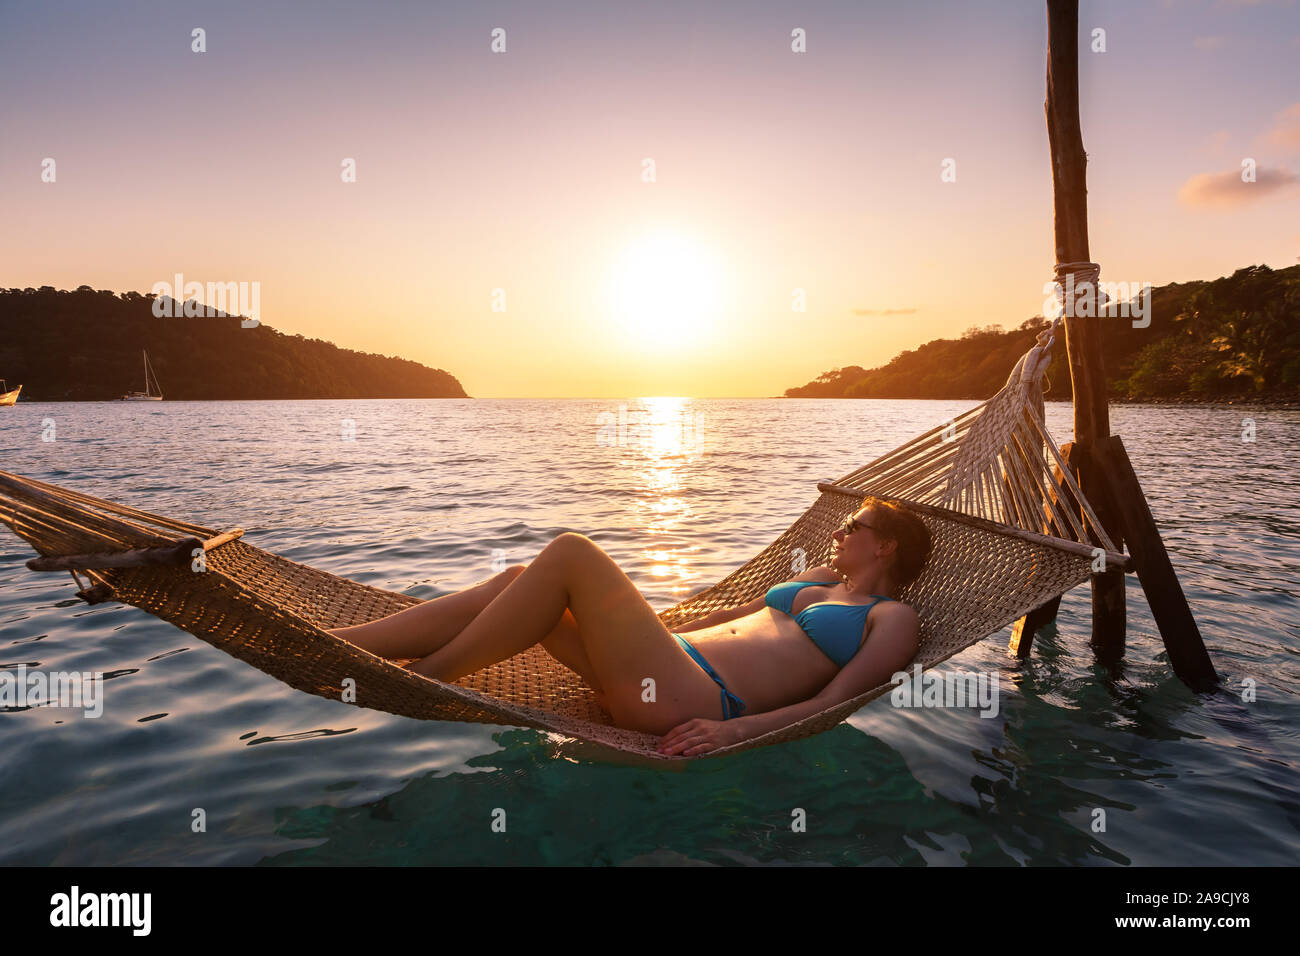 Woman relaxing at the beach dans un hamac au-dessus de l'eau de mer, l'été chaud et ensoleillé au soir locations de vacances hôtel, moment heureux au coucher du soleil Banque D'Images